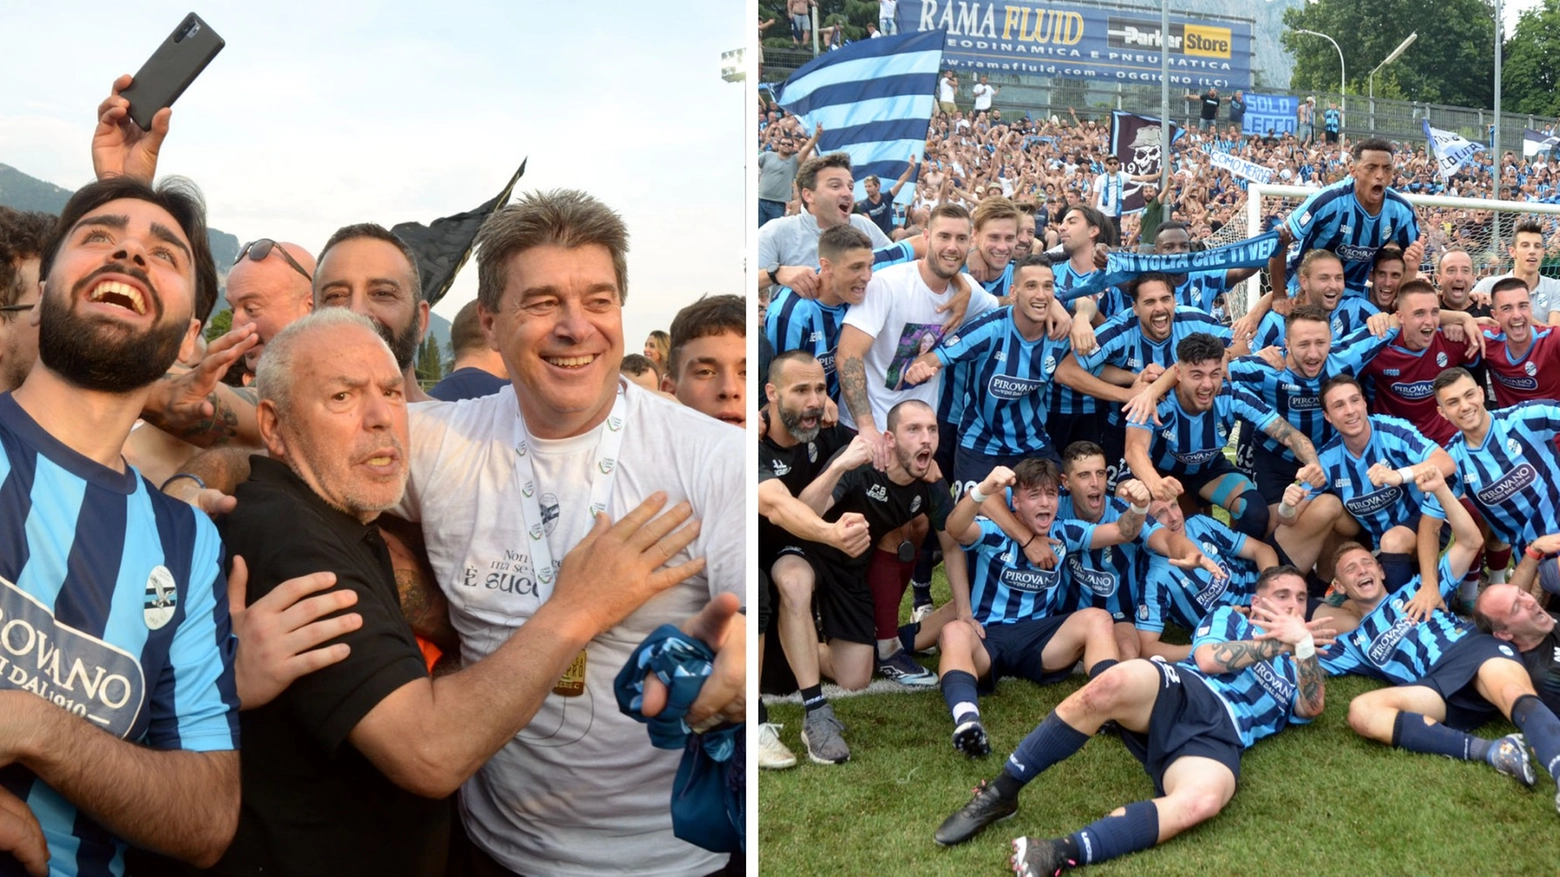 Il presidente Paolo Di Nunno, il tecnico Luciano Foschi e la squadra festeggiano la promozione in serie B ottenuta sul campo domenica 18 giugno scorso